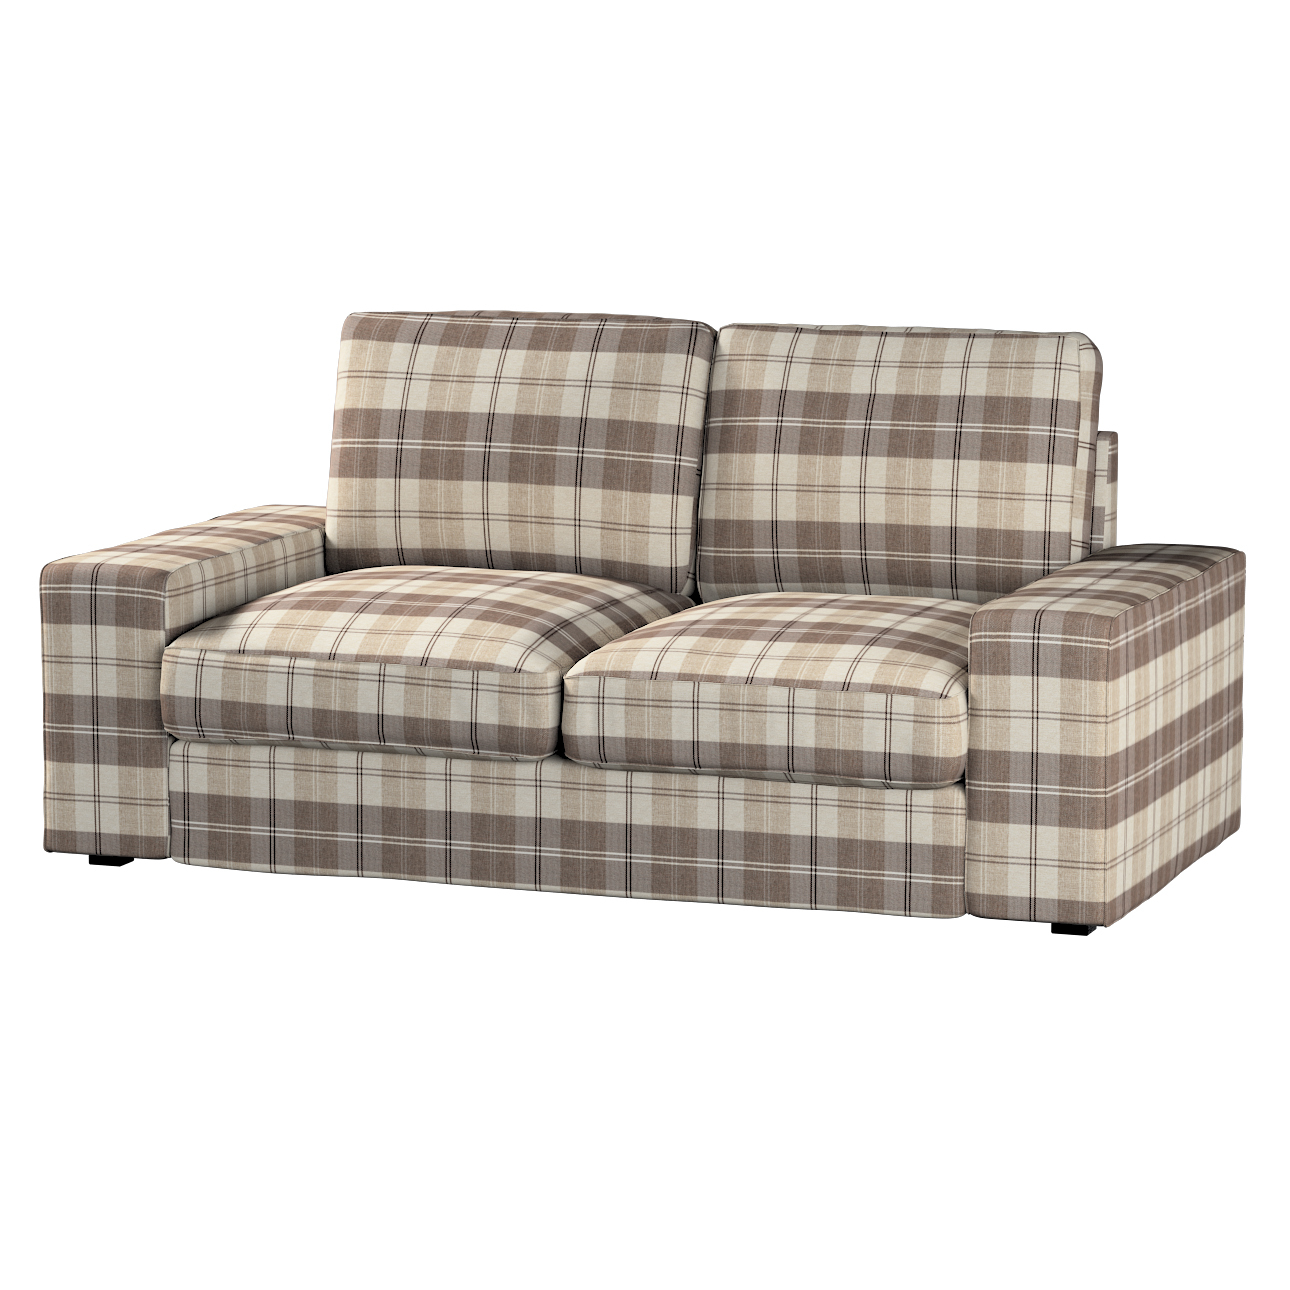 Bezug für Kivik 2-Sitzer Sofa, braun-beige, Bezug für Sofa Kivik 2-Sitzer, günstig online kaufen